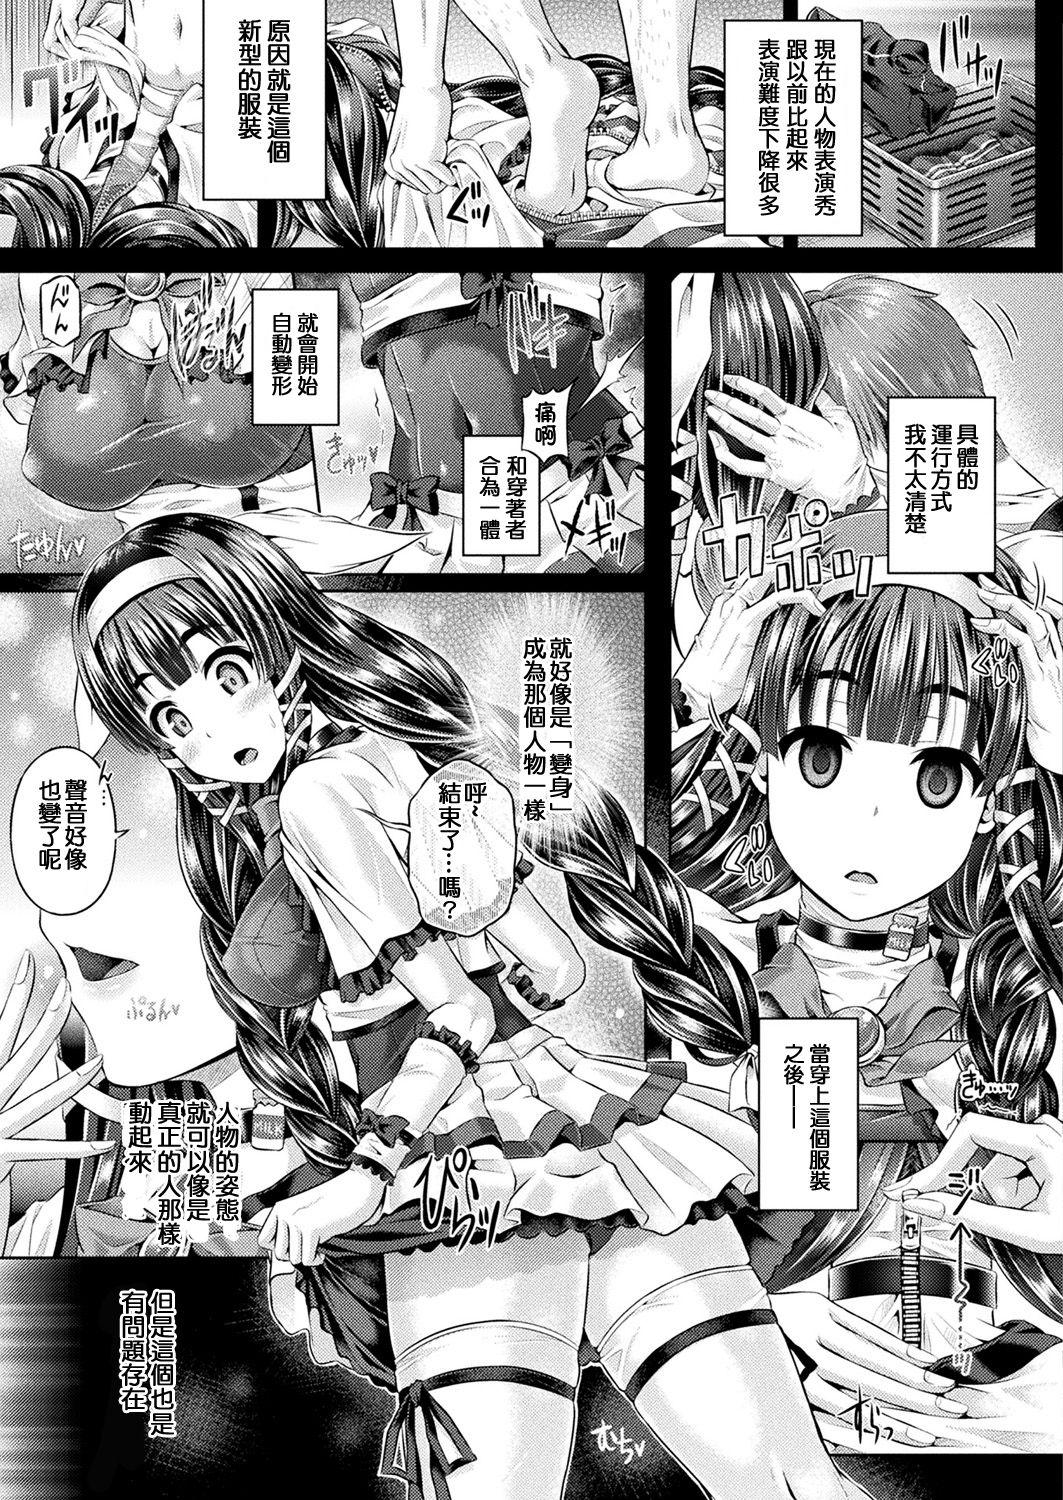 Penetration Kyou wa Kawari ni "Nakanohito" Balls - Page 3